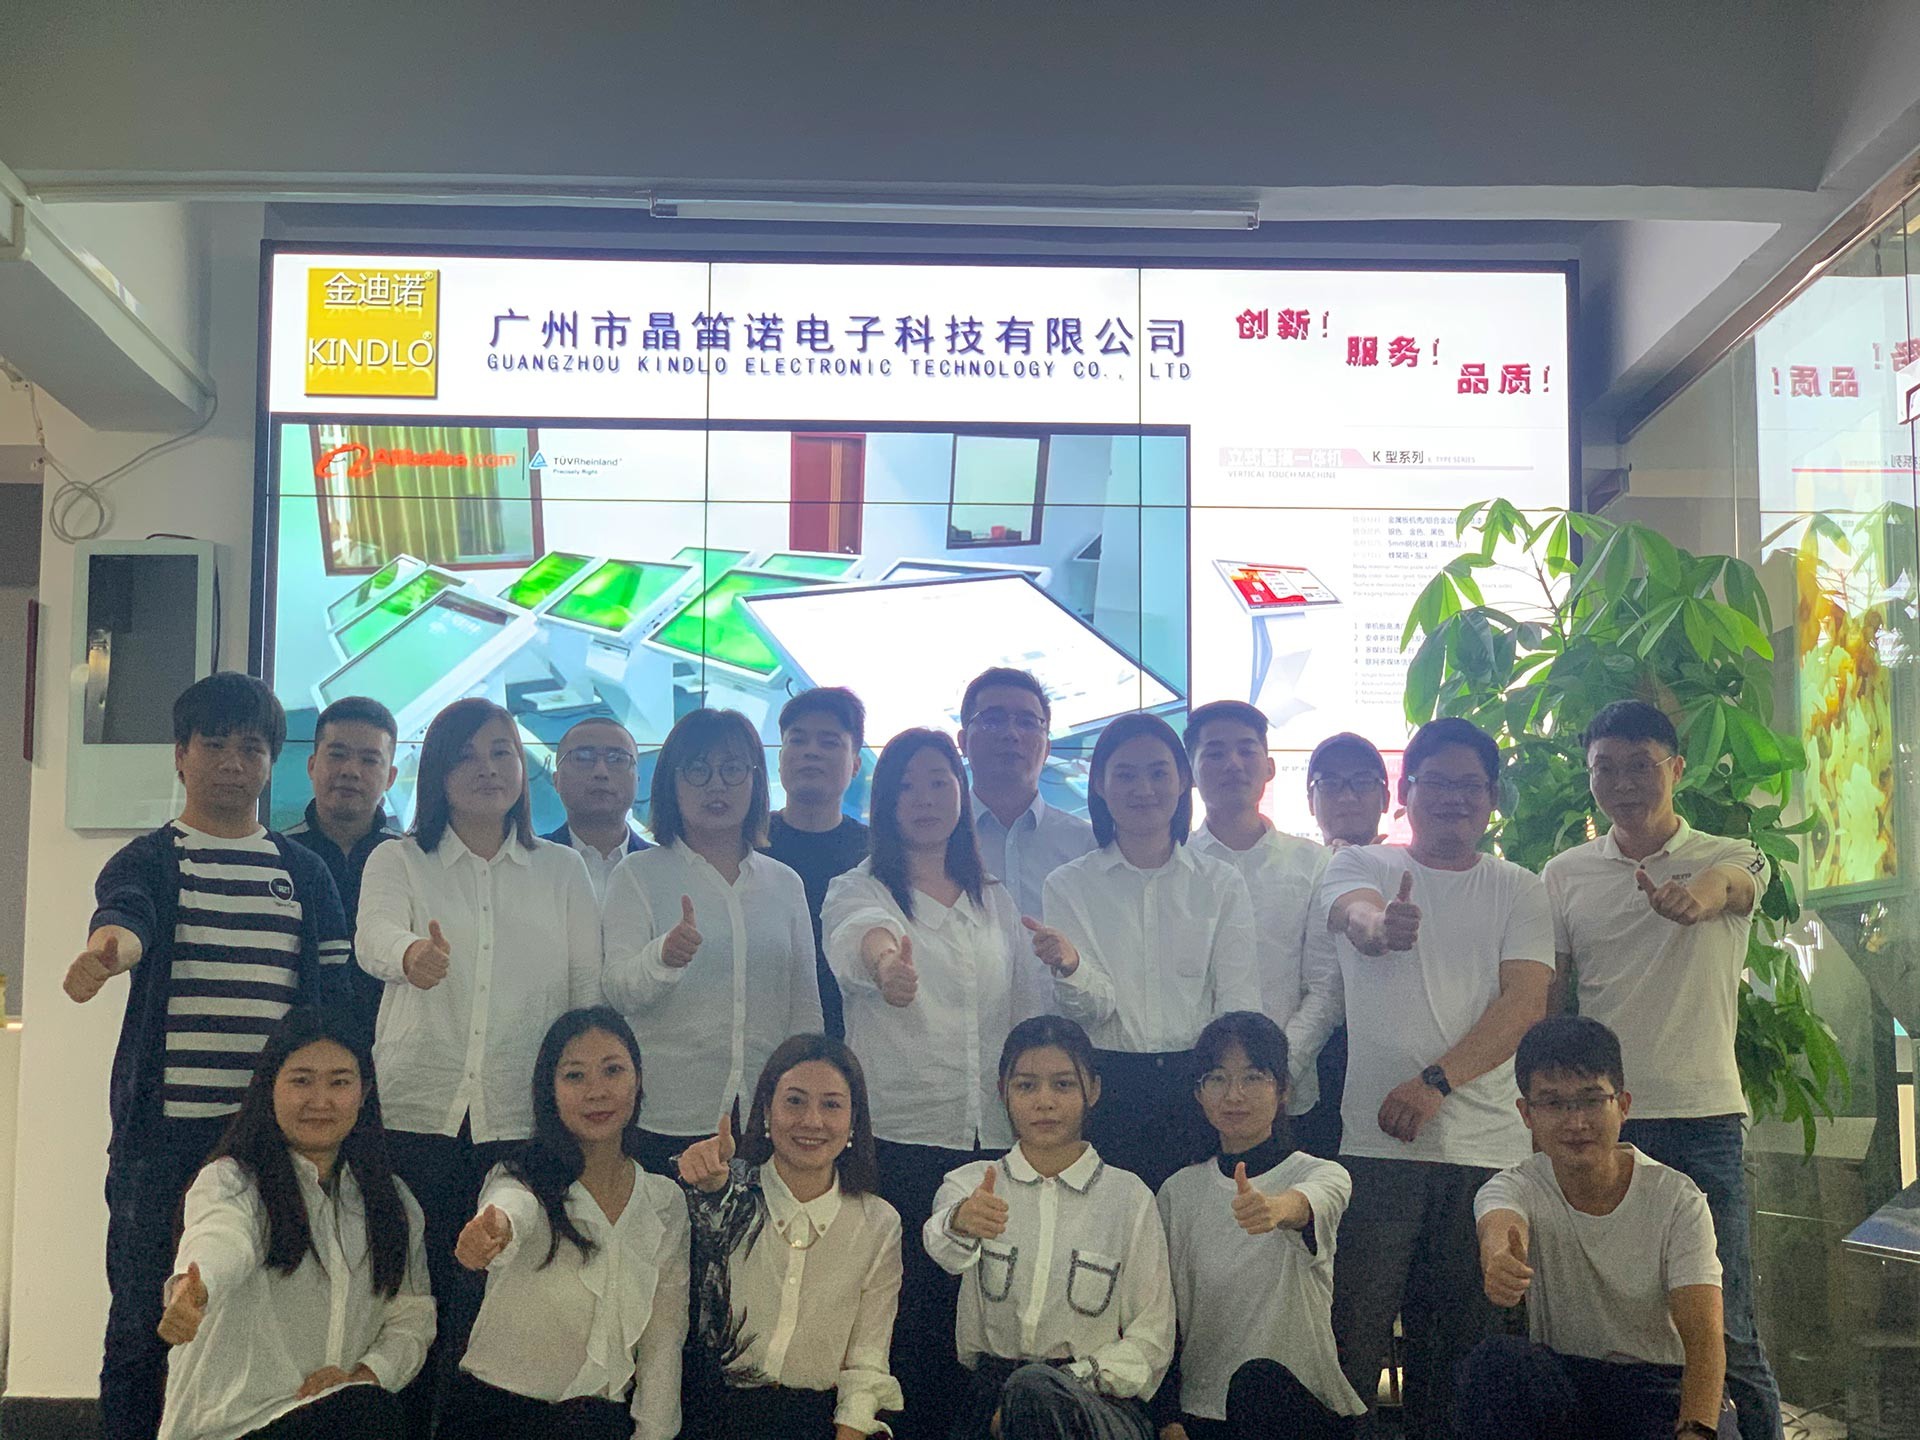 Cina Guangzhou Jingdinuo Electronic Technology Co., Ltd.